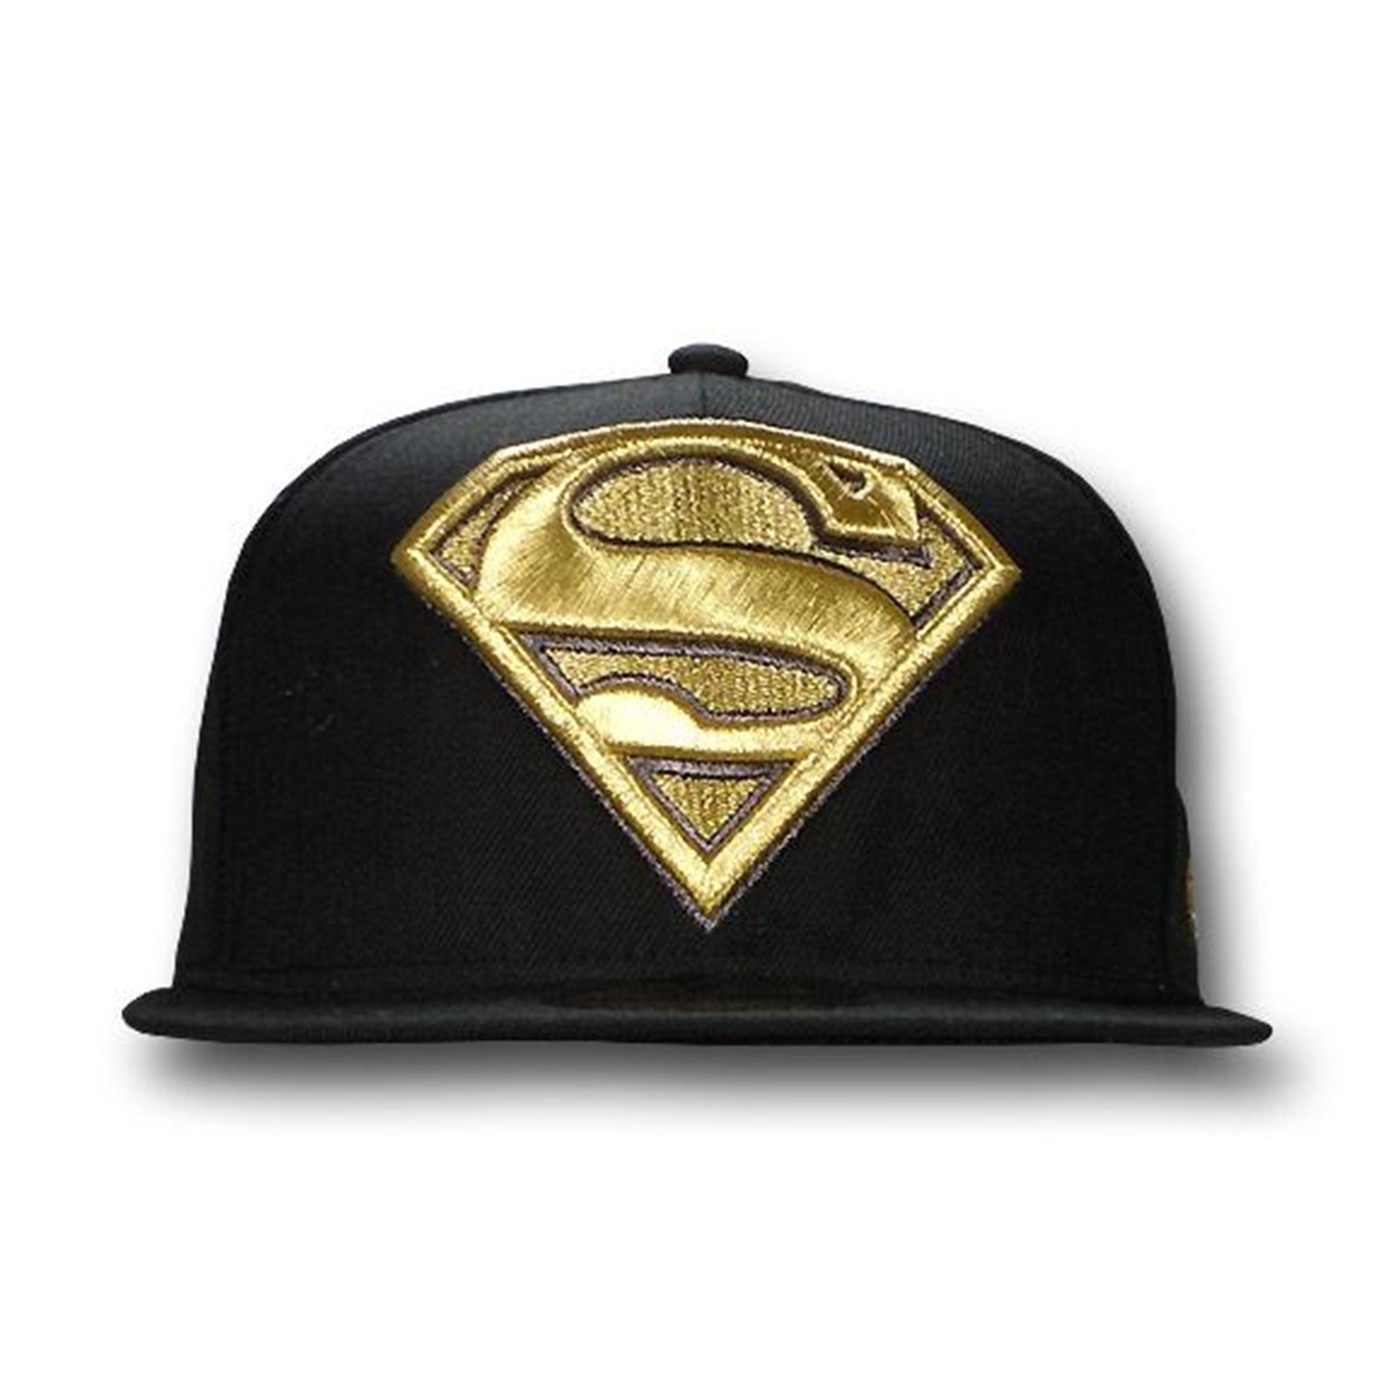 Superman 59Fifty Black Gold Flat Bill Hat